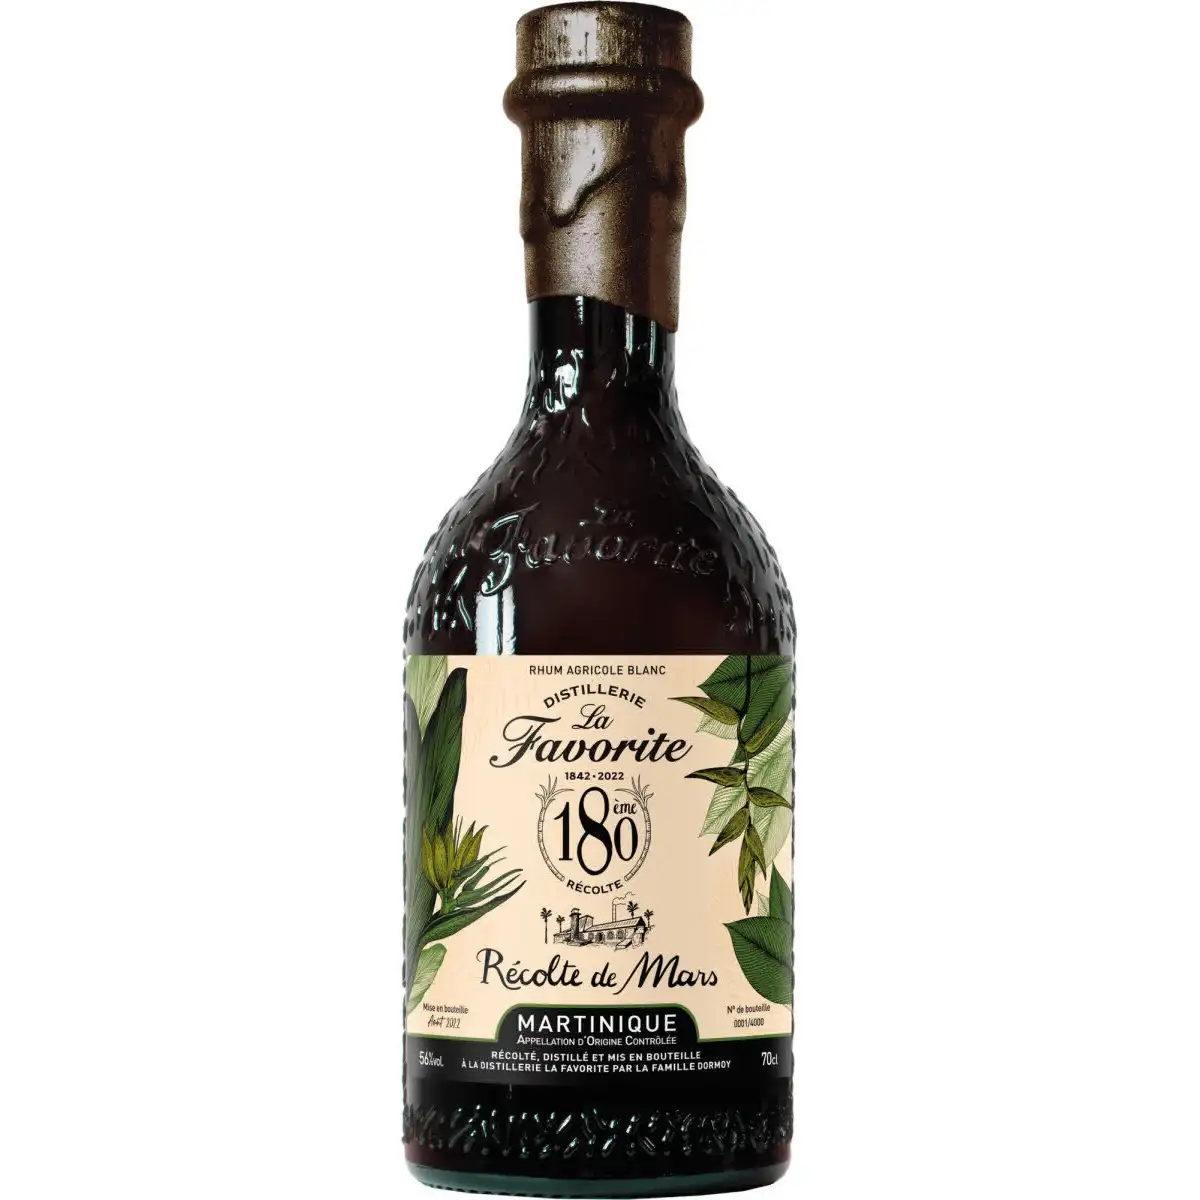 Image of the front of the bottle of the rum Récolte de Mars 180ème